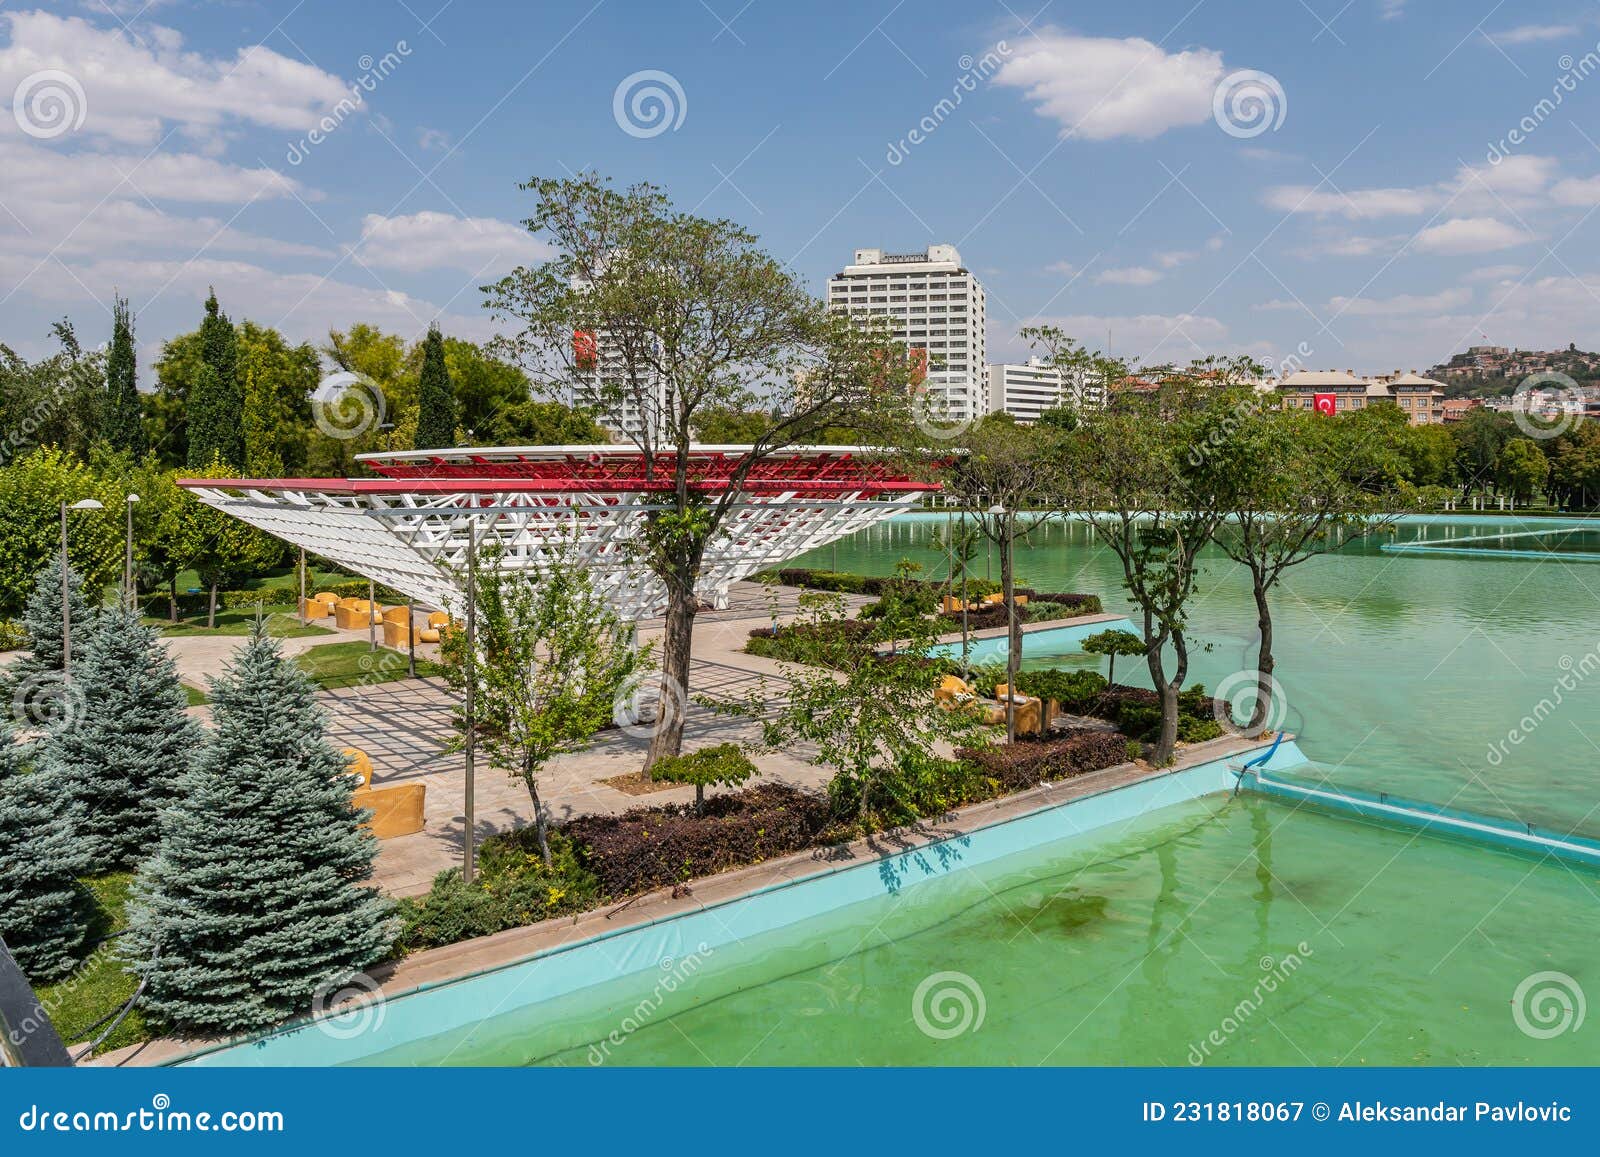 Ankara Genclik Park stock image. Image of ankara, colorful - 231818067